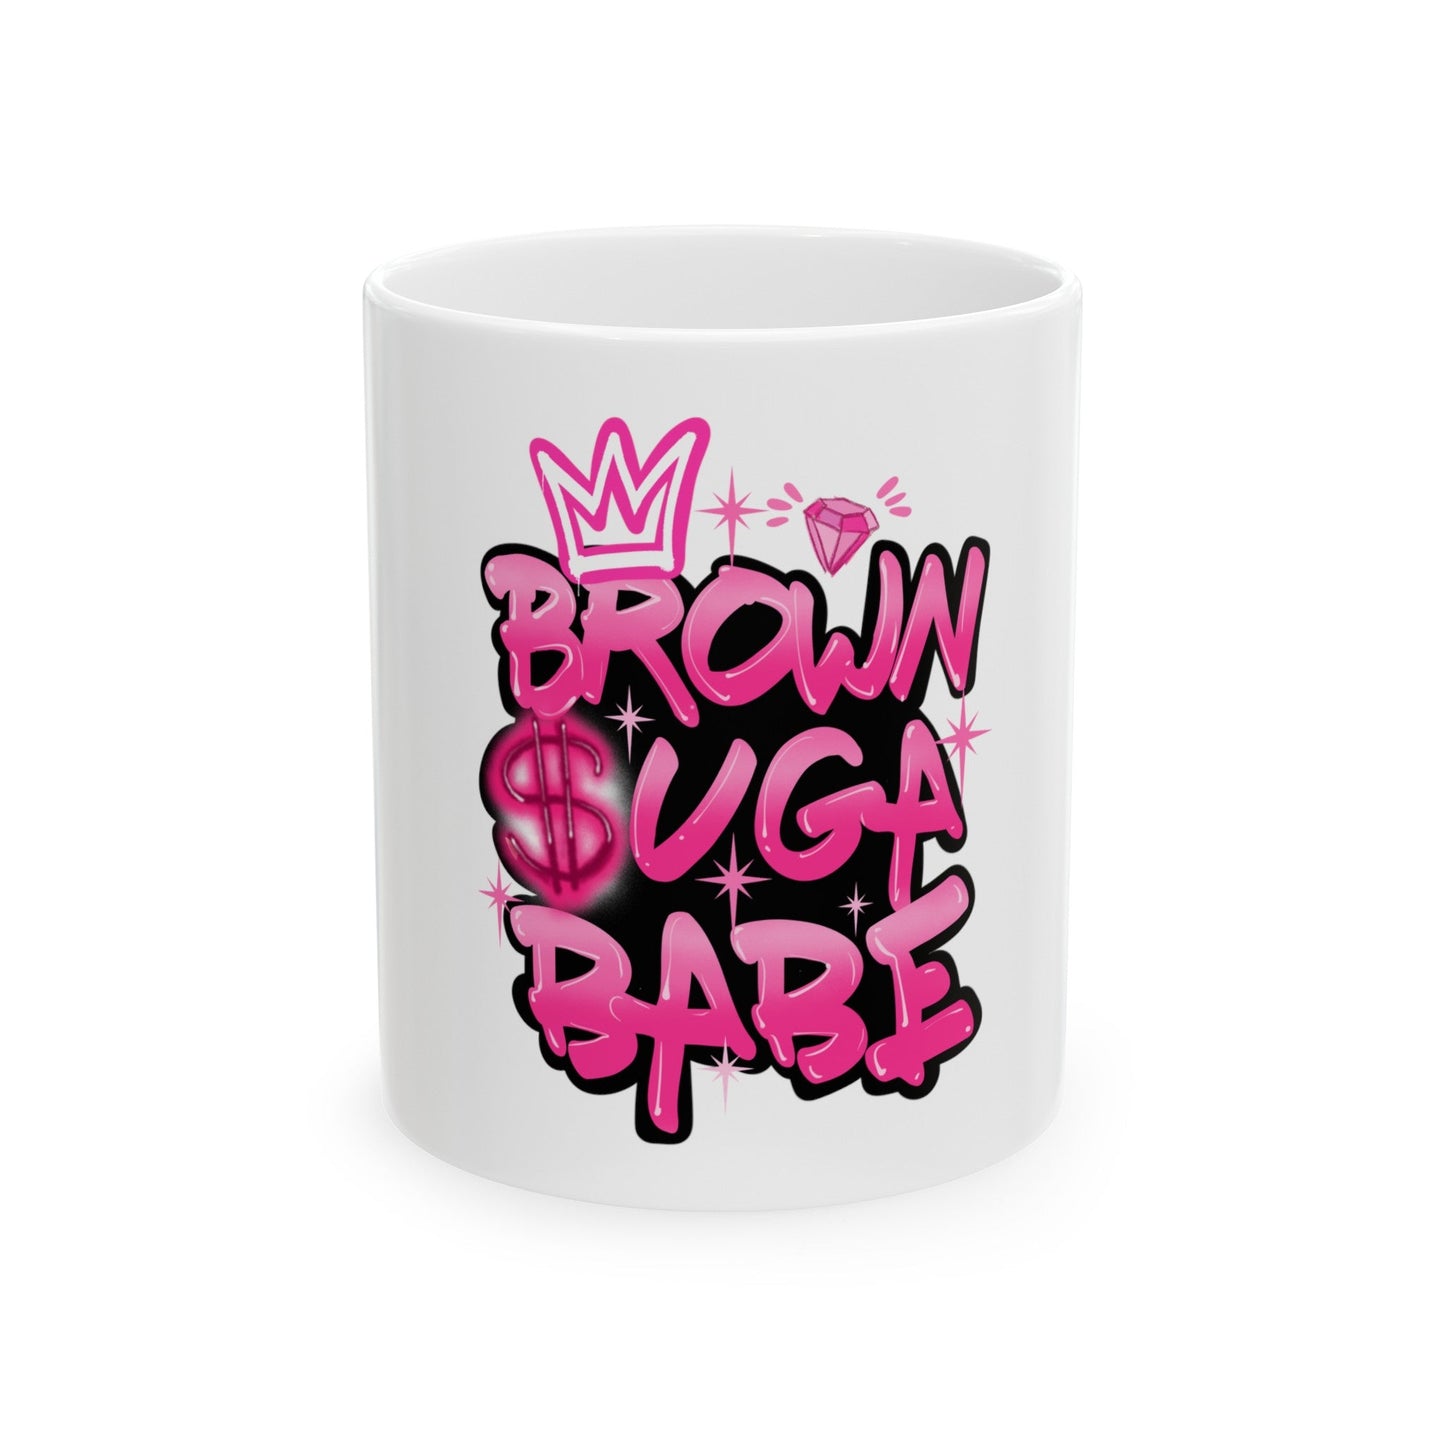 Brown Suga Babe (Pink) bundle